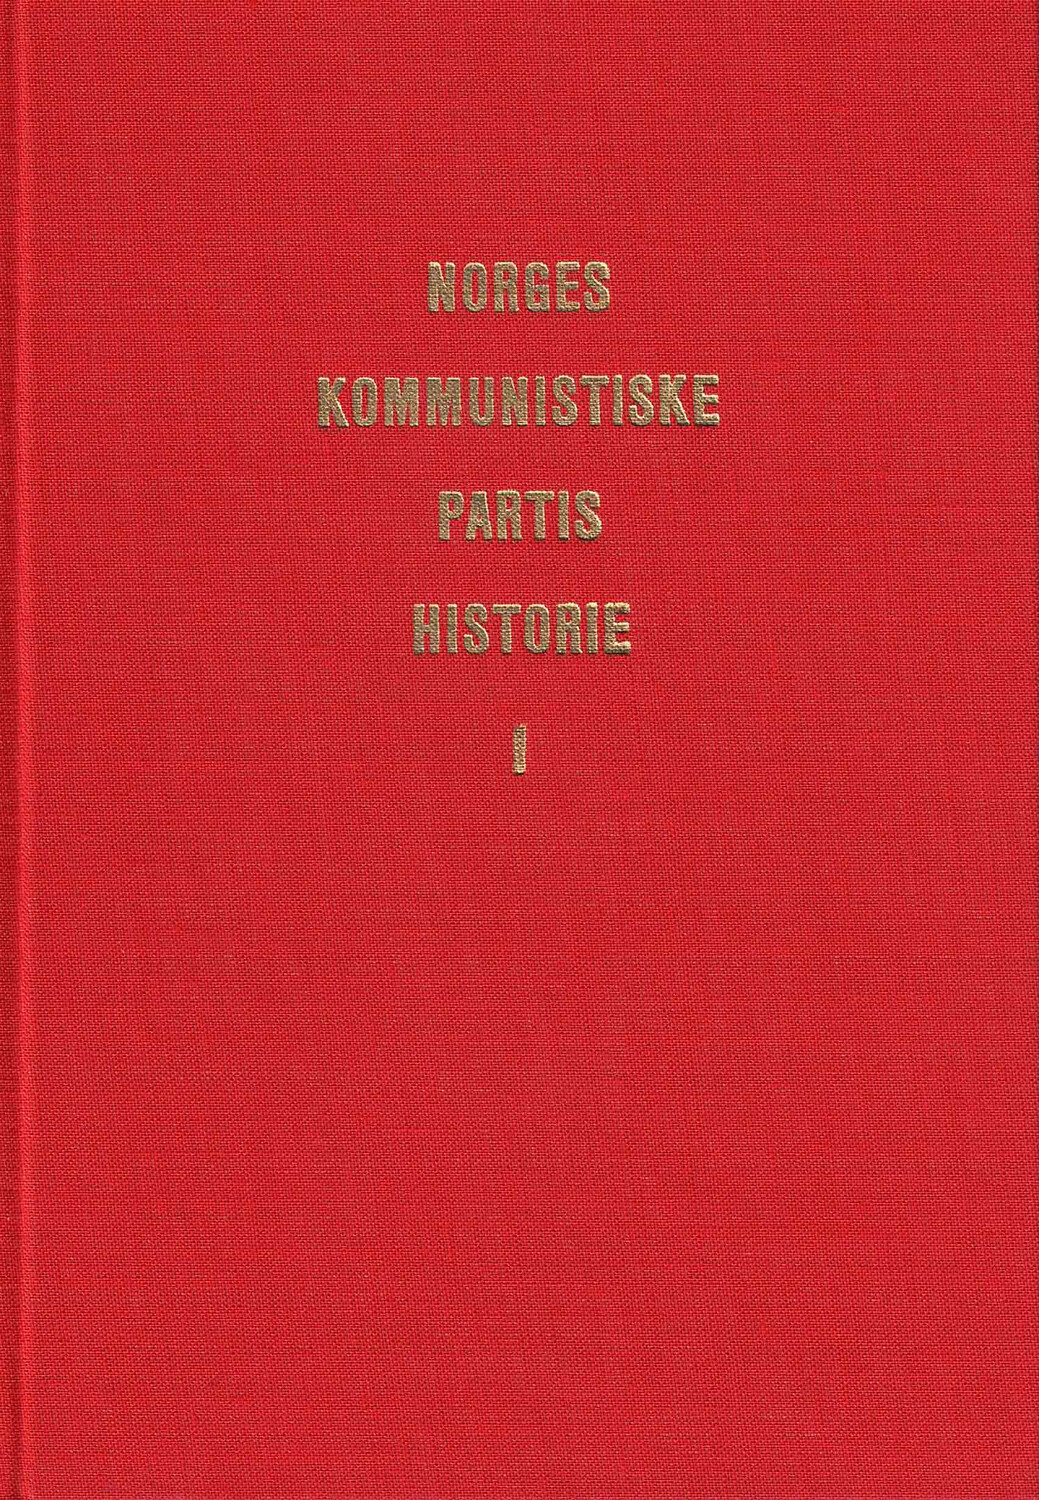 Norges Kommunistiske Partis Historie